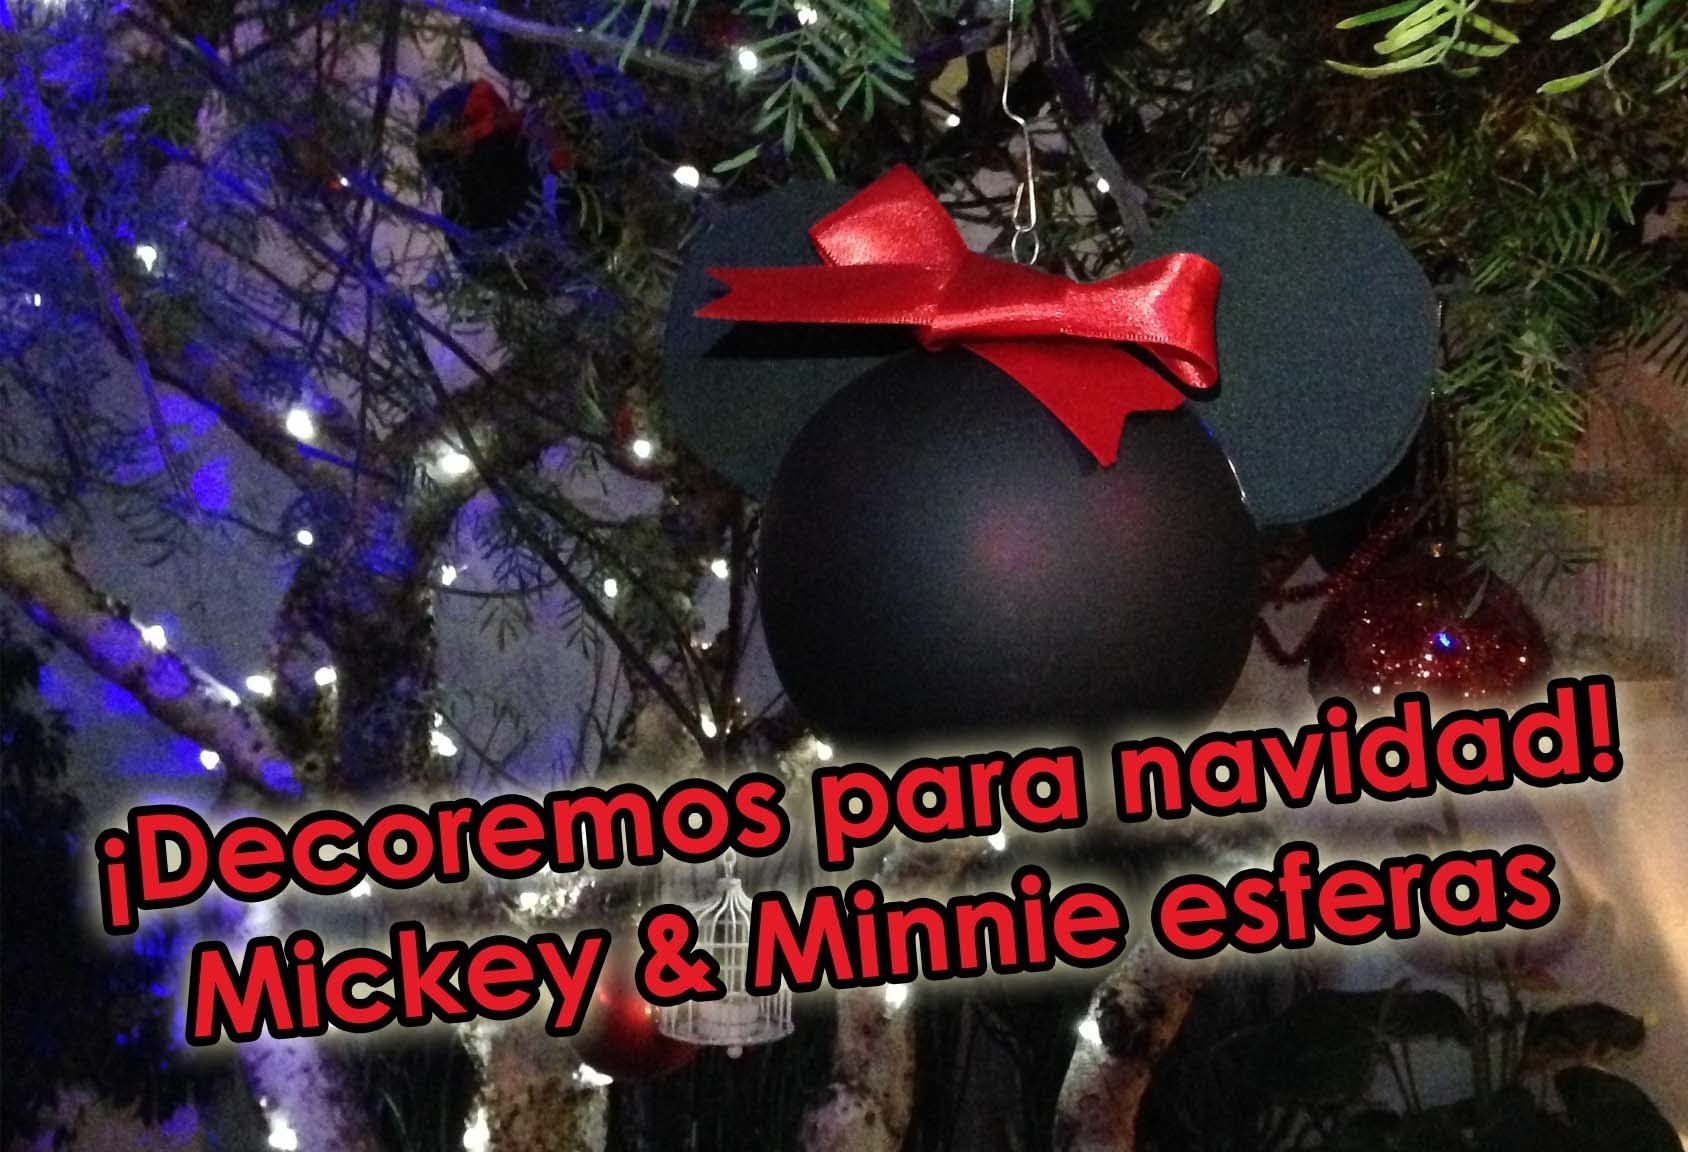 ♡DIY ♡Mickey & Minnie Esferas♡ Decoremos para Navidad!!!♡